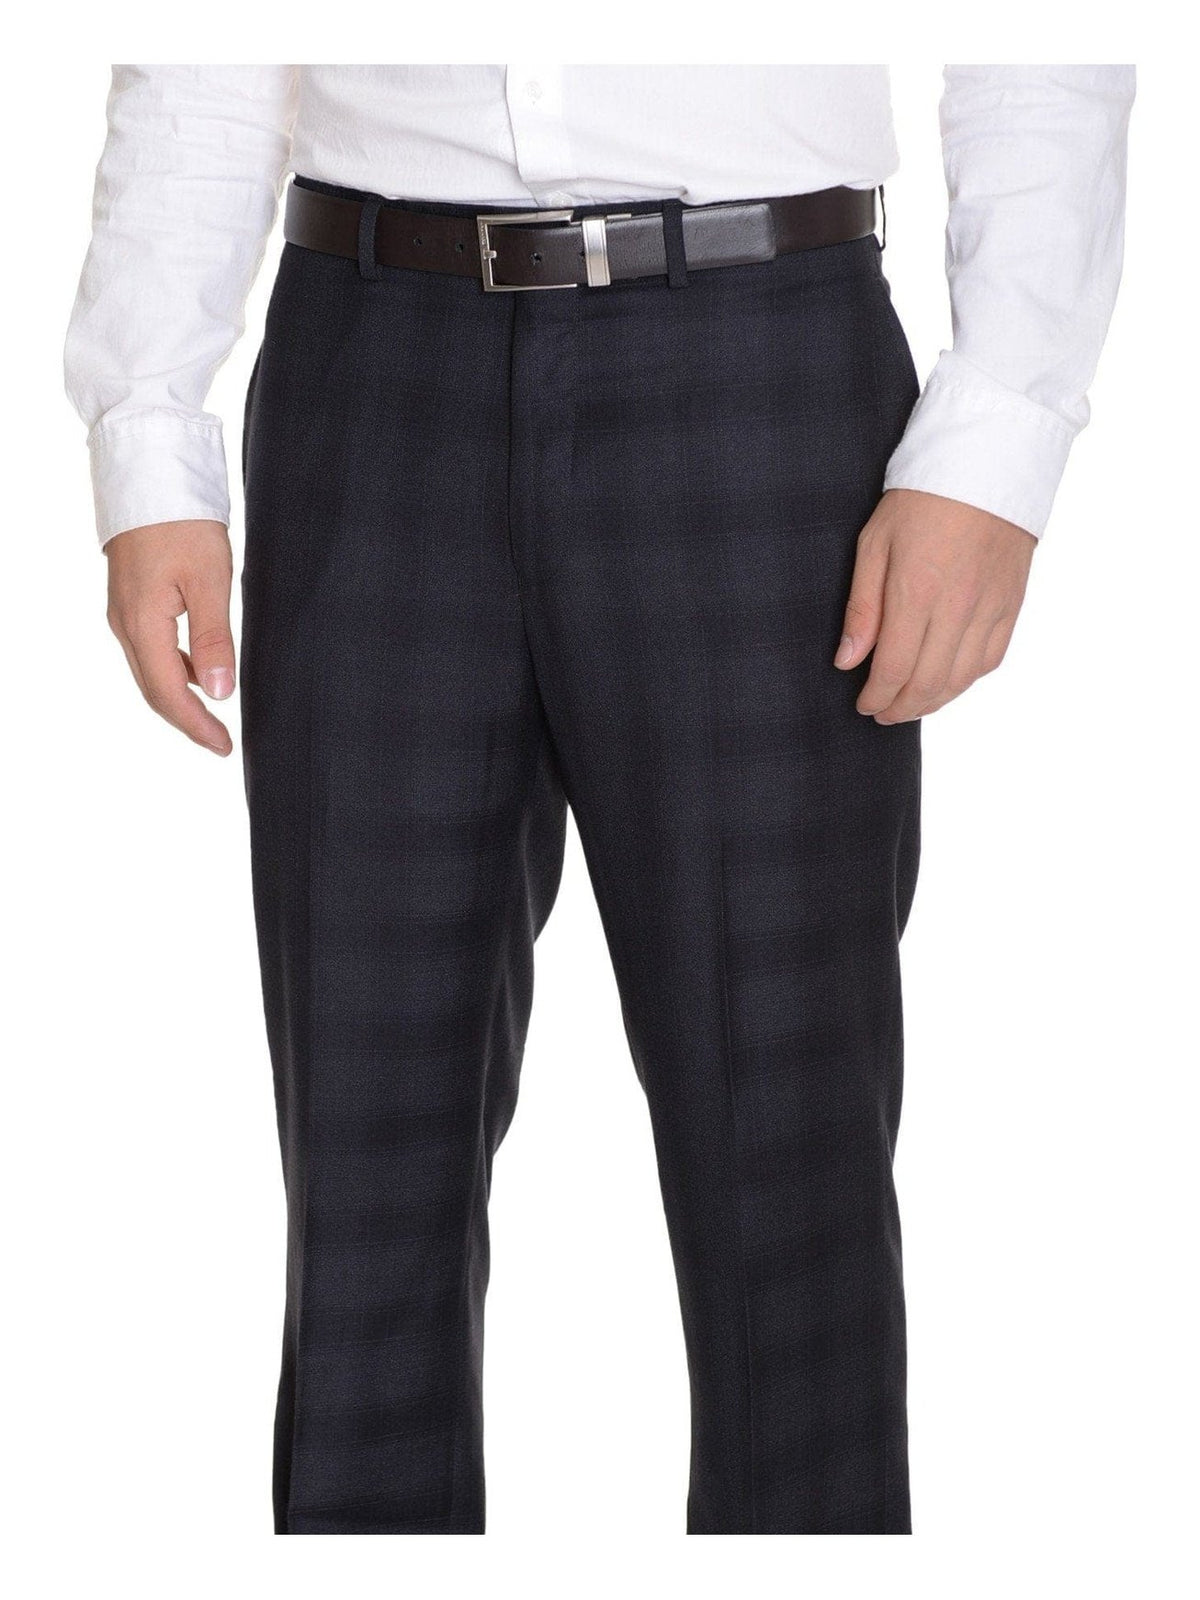 Calvin Klein Slim Fit Charcoal Gray Plaid Flat Front Washable Dress Pants - The Suit Depot